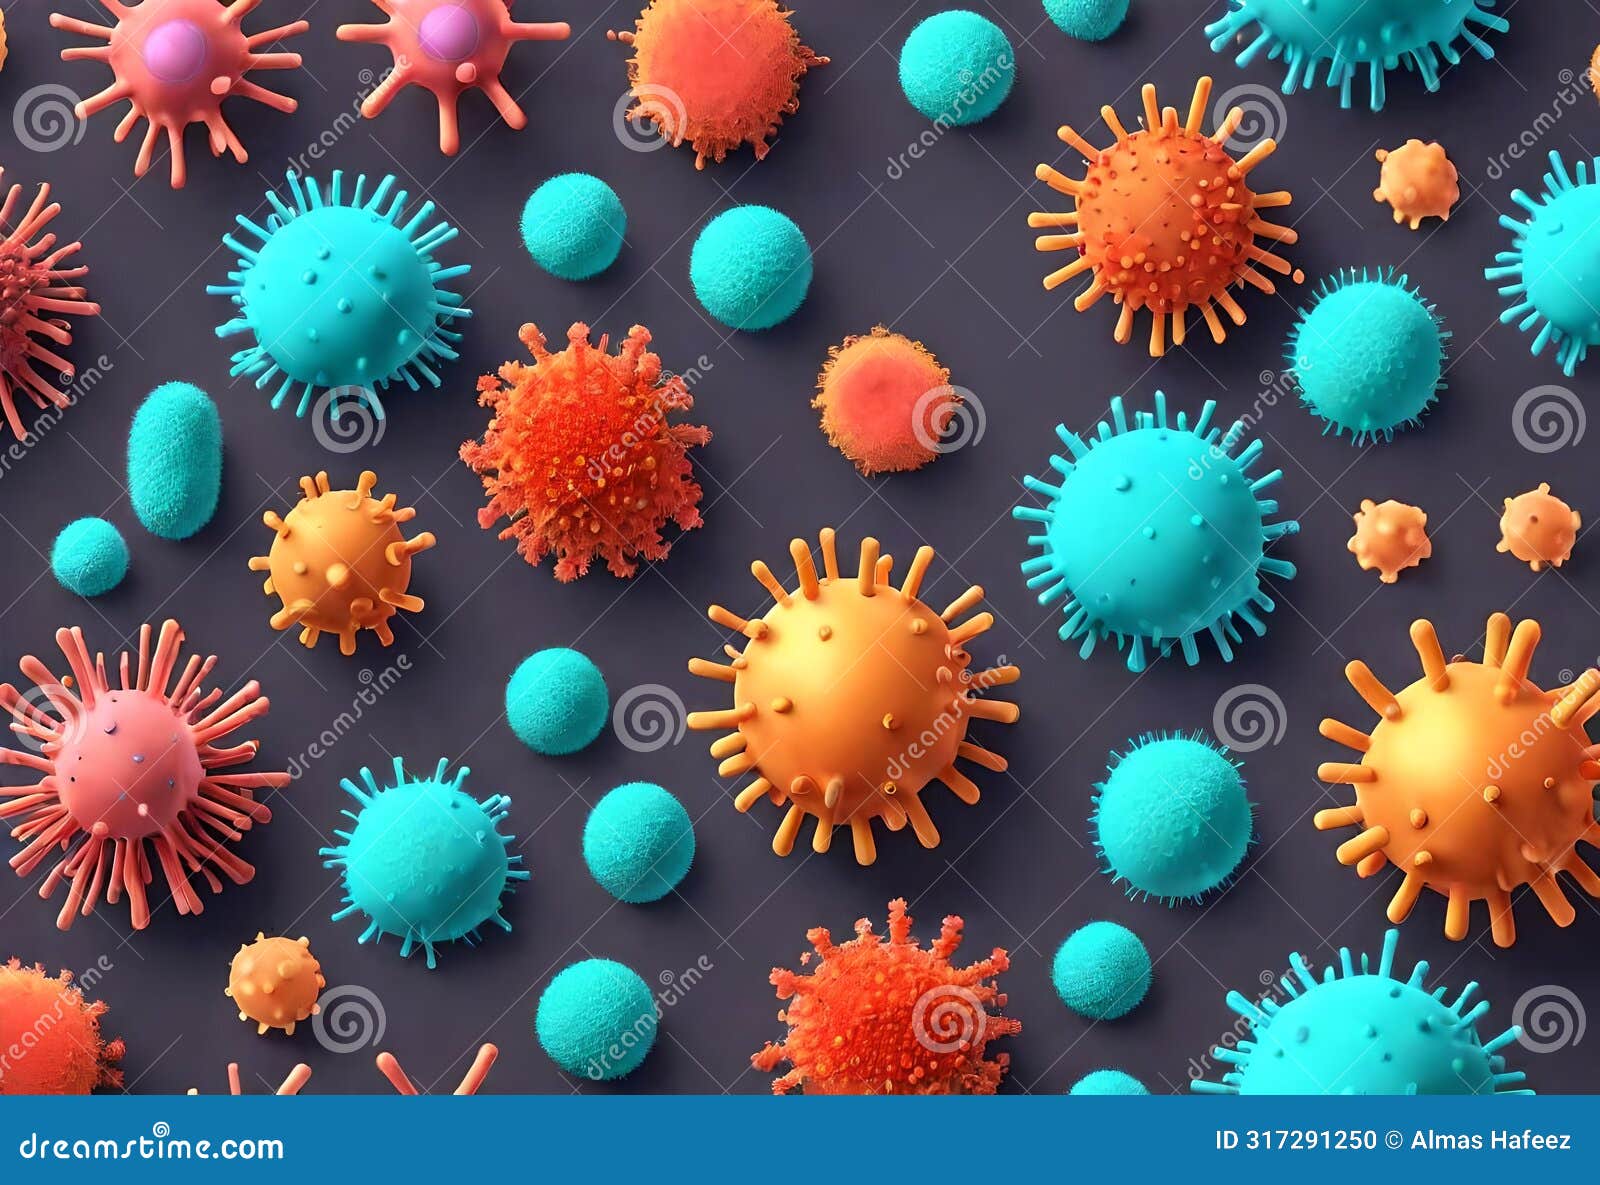 corona virus microorganisms in intricate 3d rendering